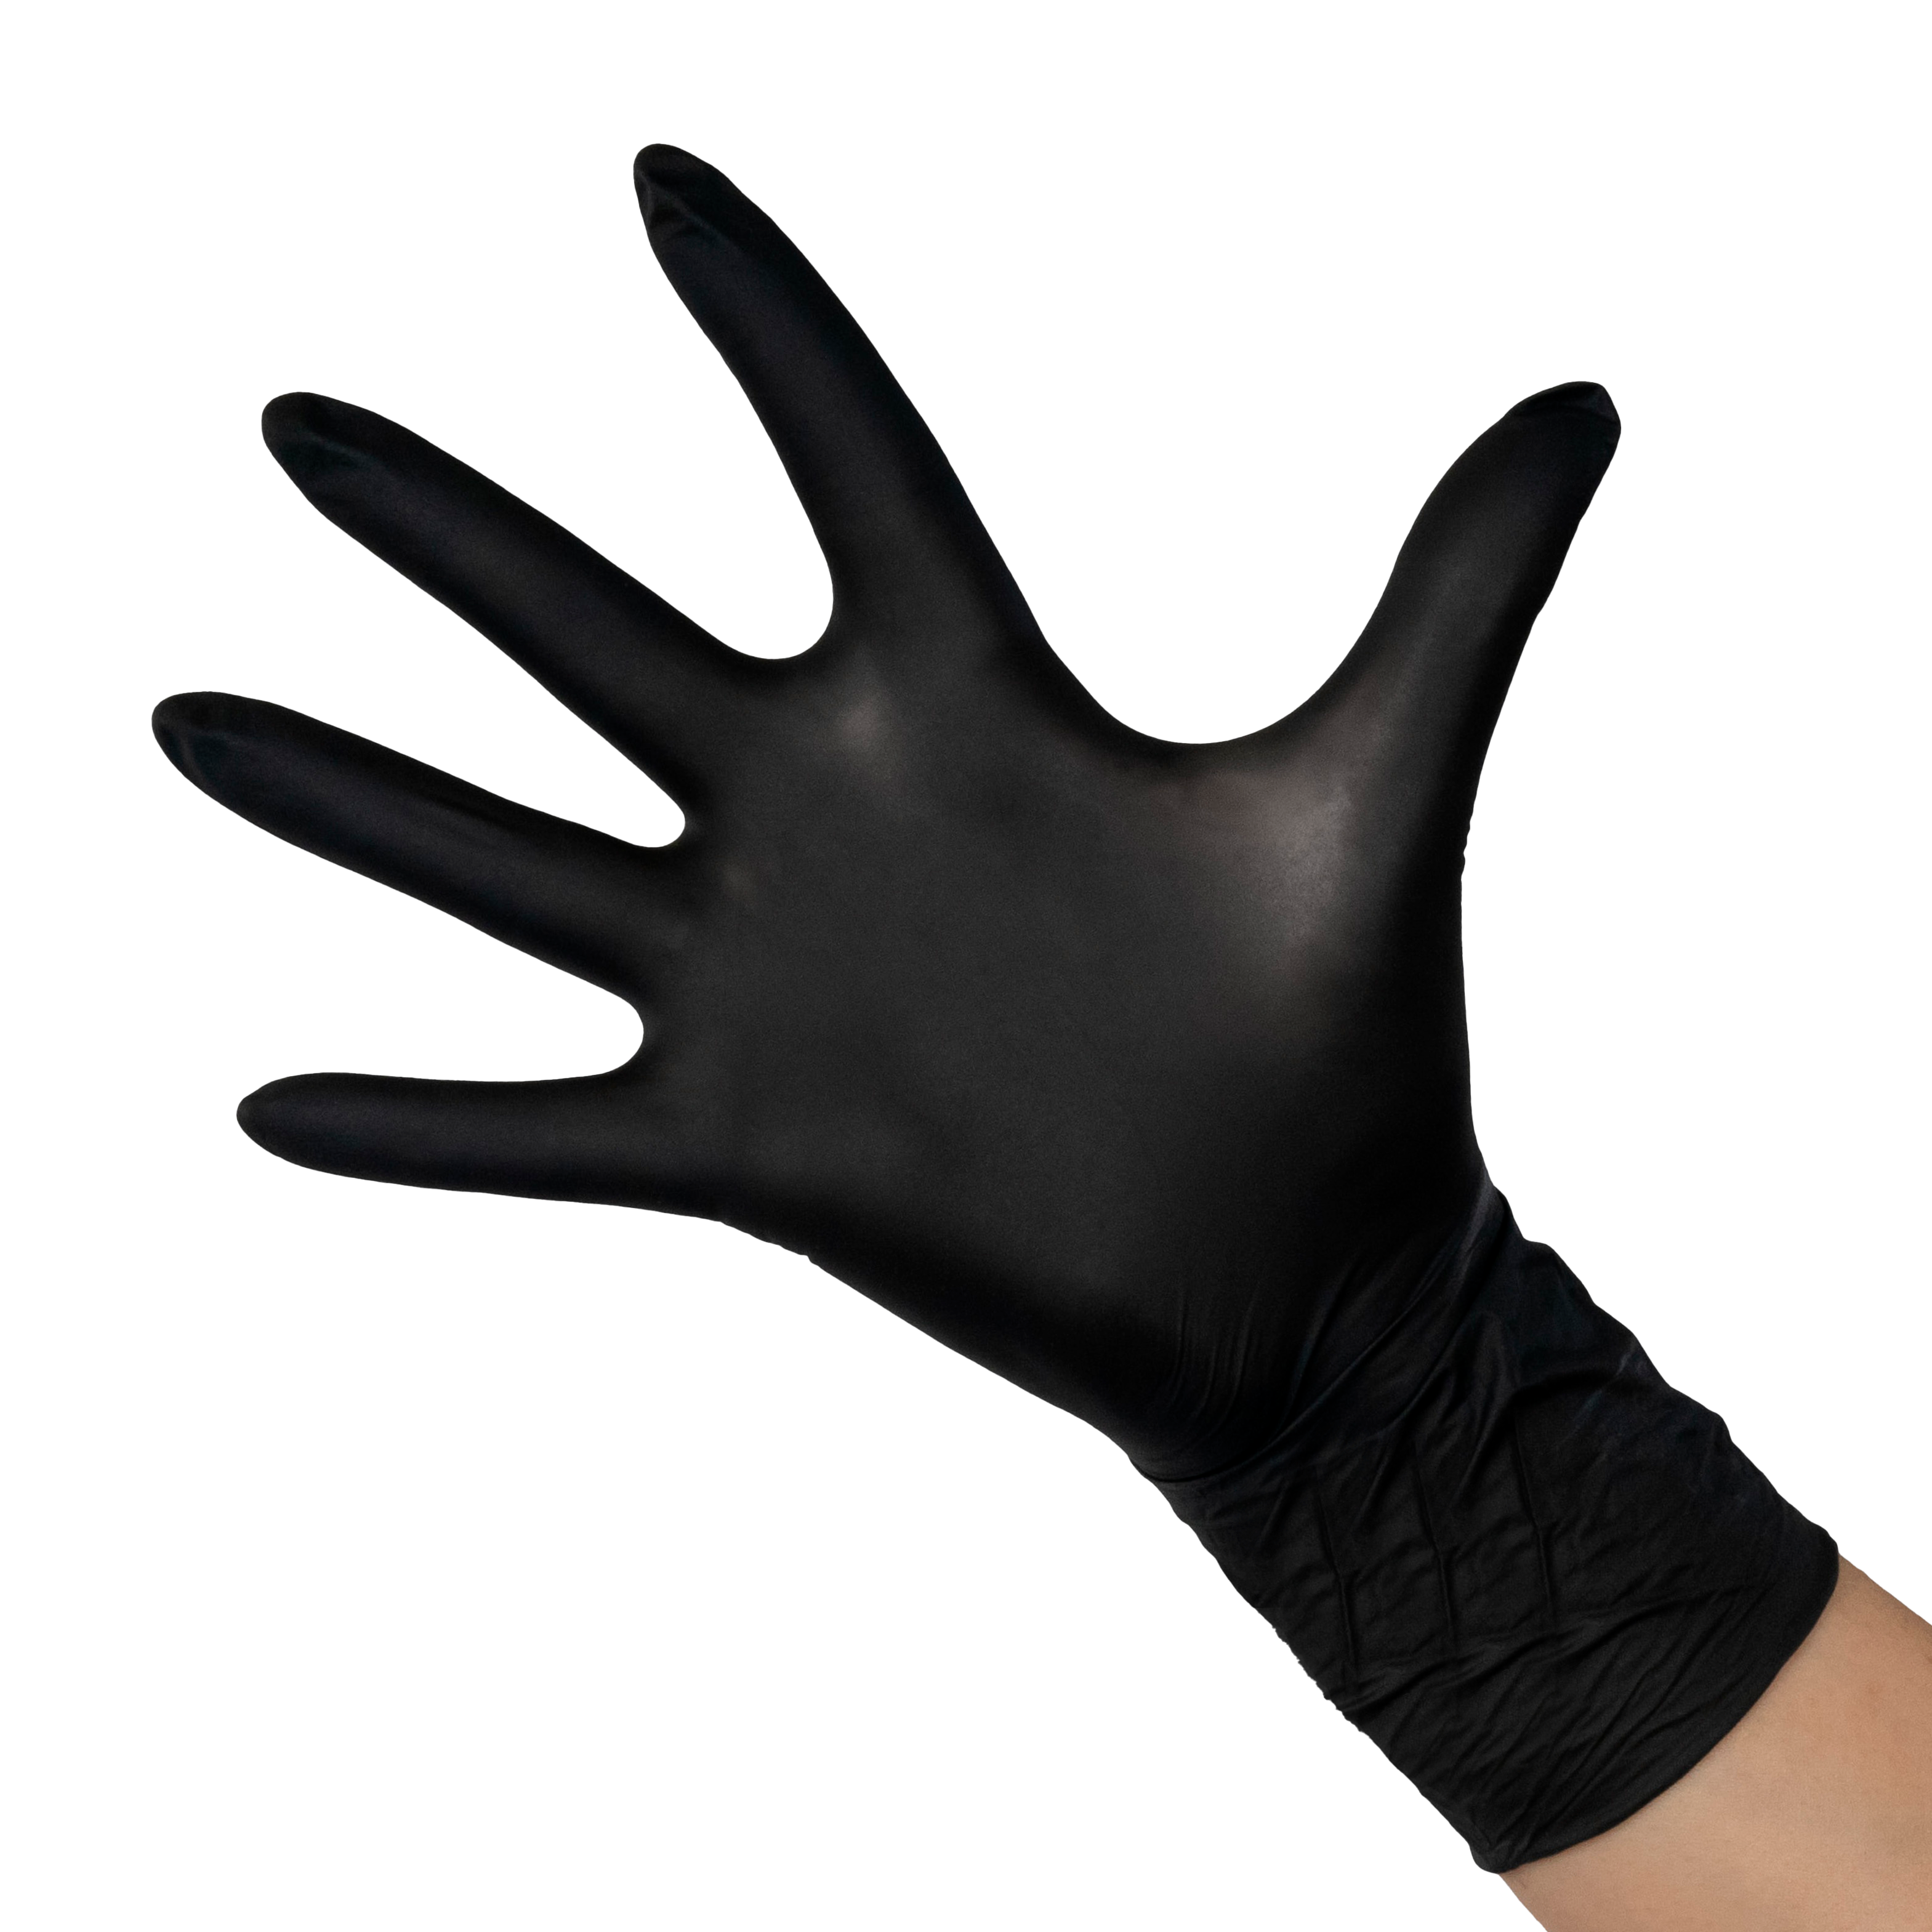 SAFE & CARE Перчатки нитрил черные S / Safe&Care ZN 318 100 шт перчатки inekta нитриловые одноразовые смотровые р р s 50 пар